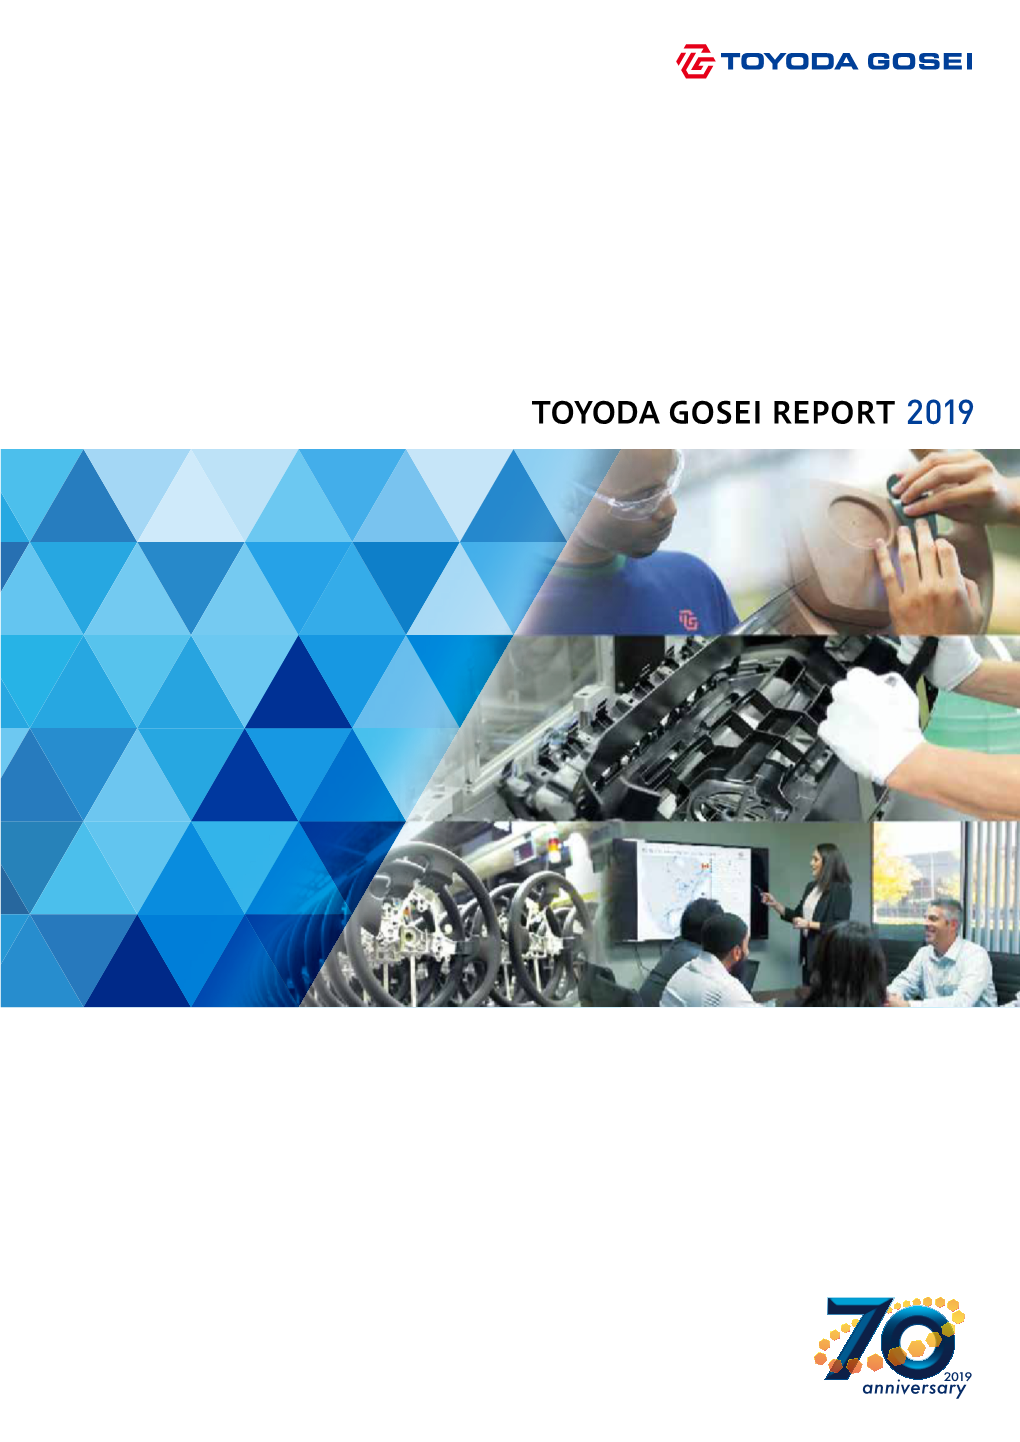 Toyoda Gosei Report 2019